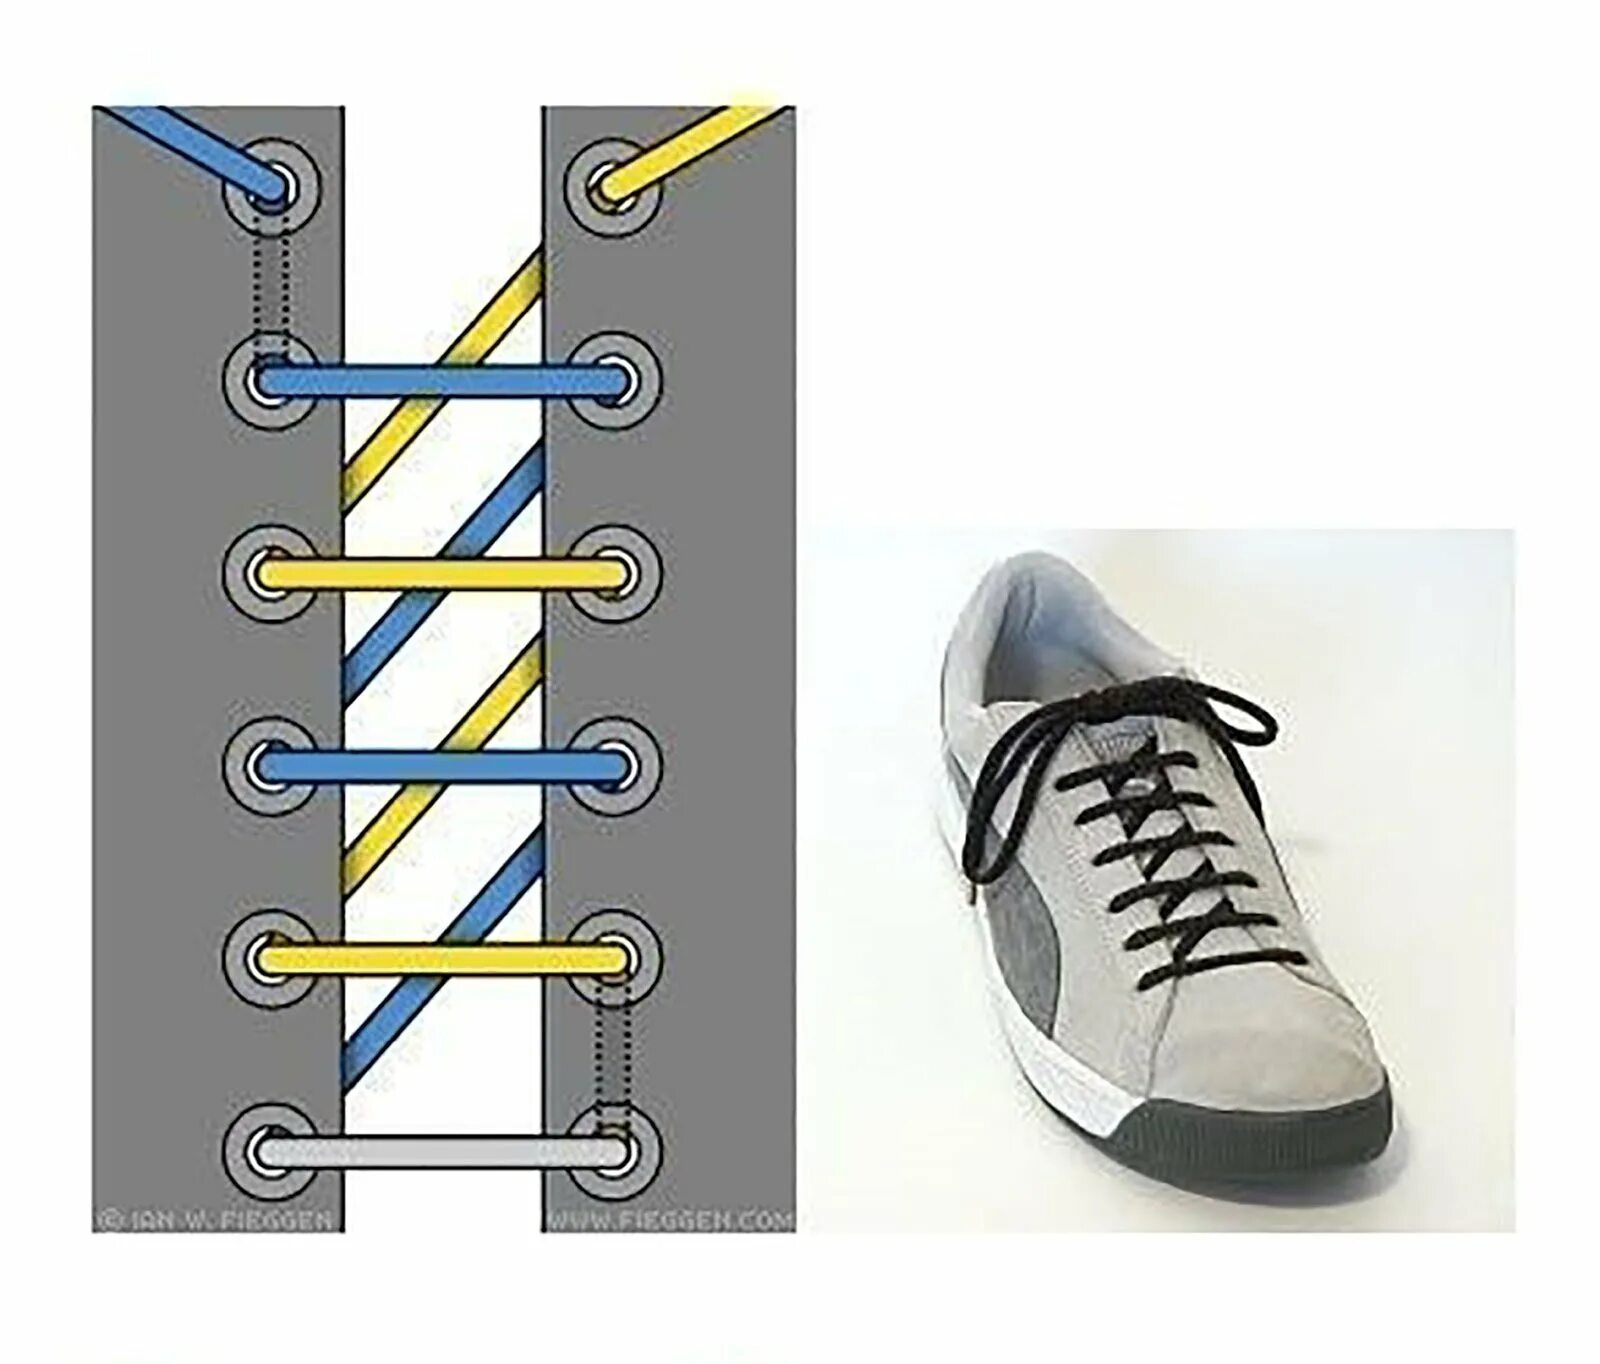 Как красиво зашнуровать кроссовки женские поэтапно. Типы шнурования шнурков на 5 дырок. Шнурки зашнуровать 6 дырок. Способы завязывания шнурков на 5 дырок. Типы шнурования шнурков на 6 отверстий.